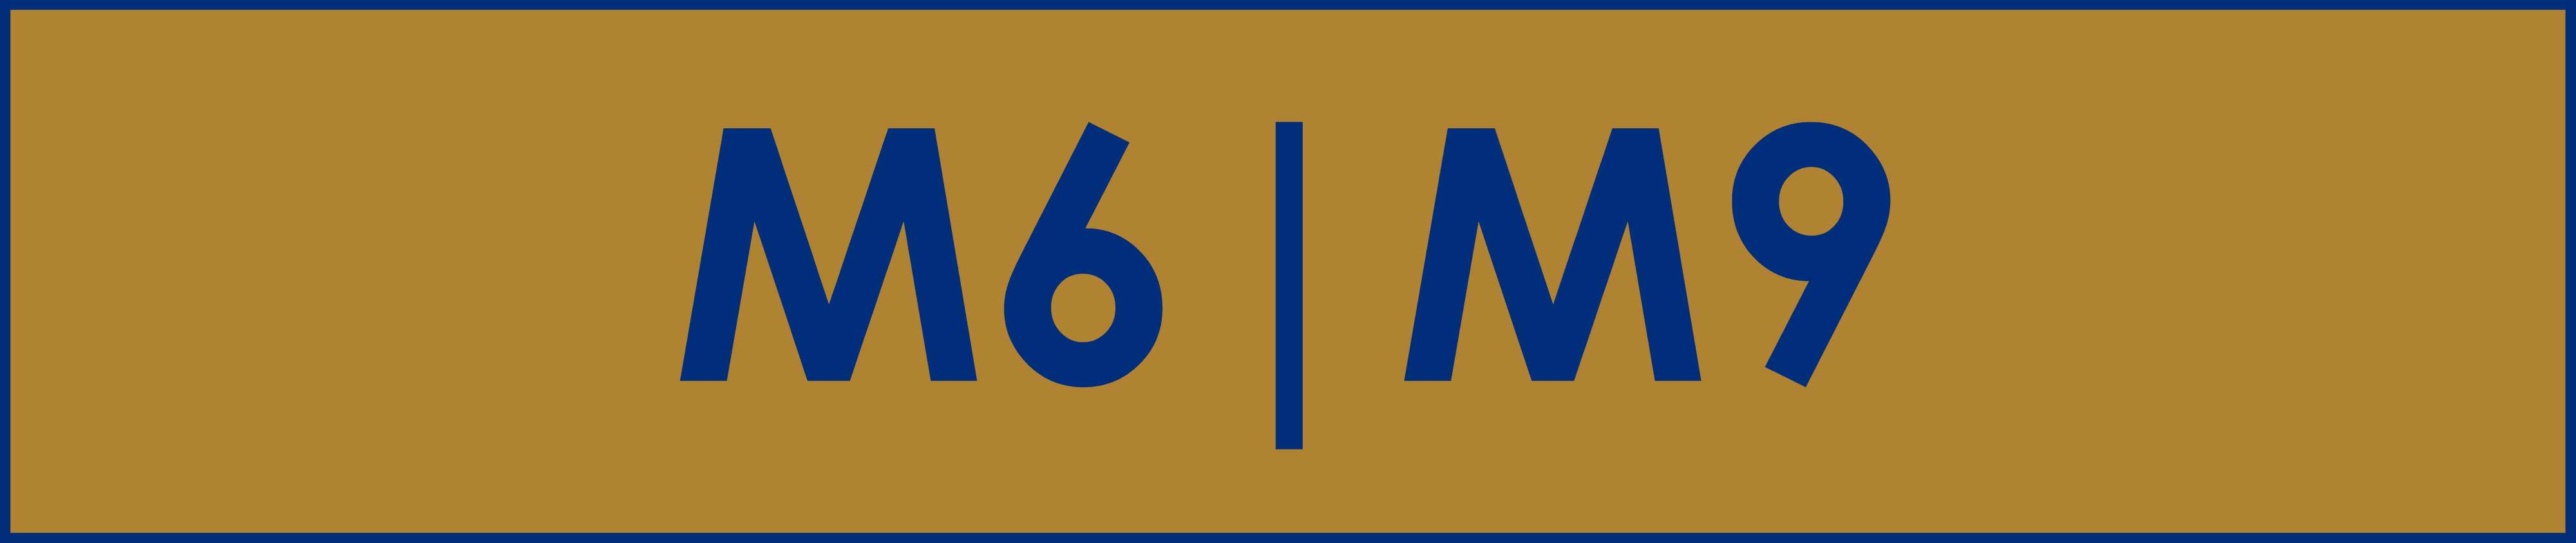 M6M9 banner